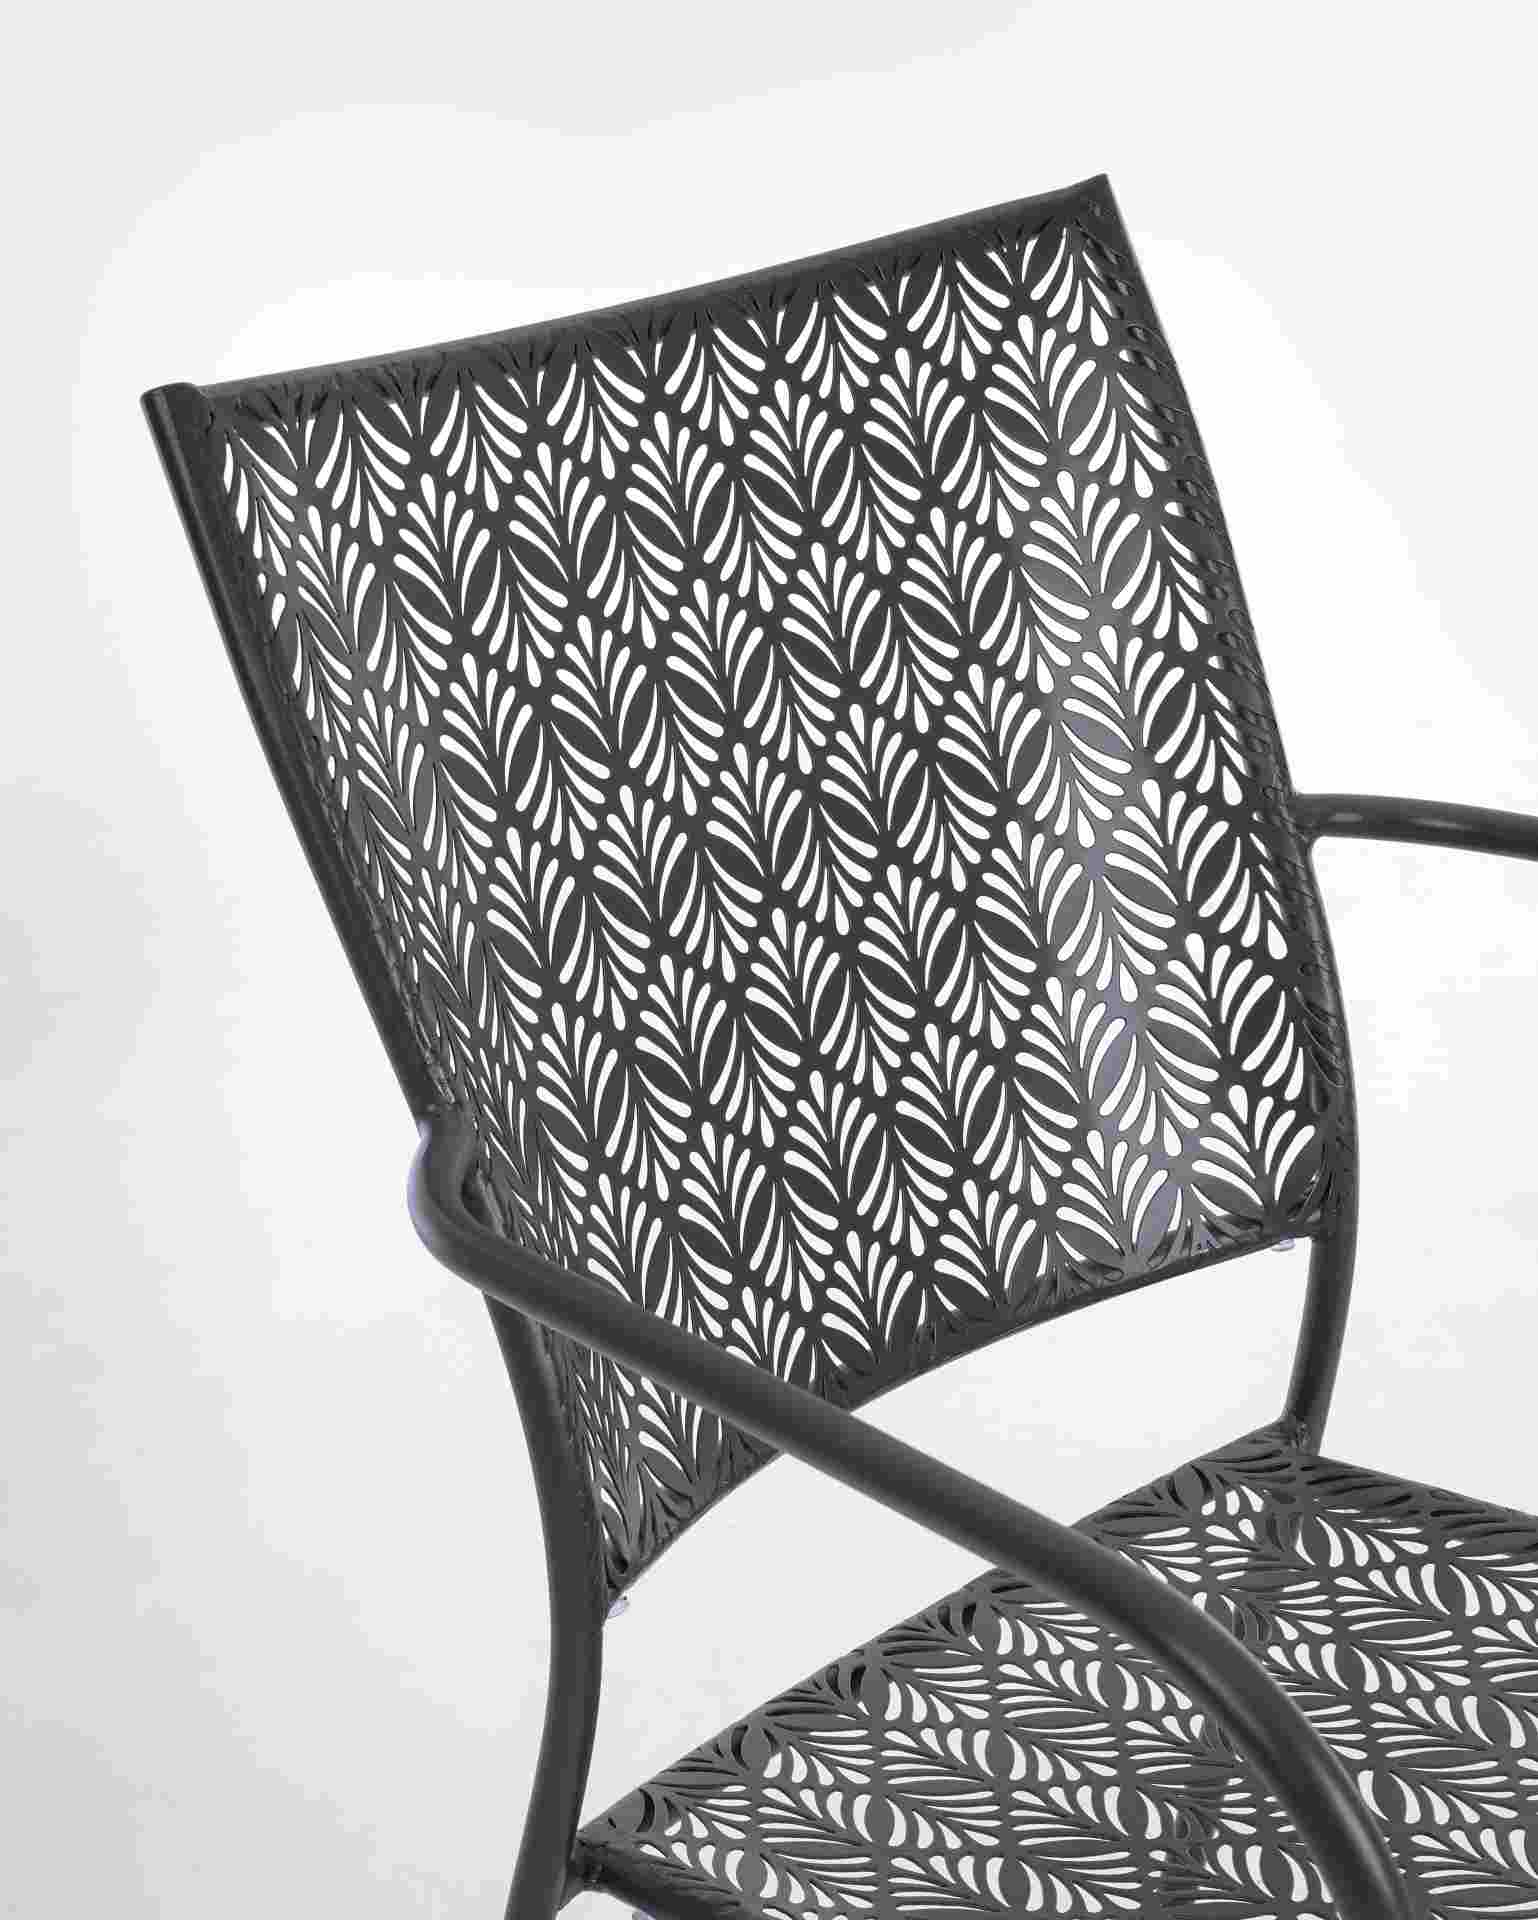 Der Gartenstuhl Lizette überzeugt mit seinem klassischen Design. Gefertigt wurde er aus Aluminium, welches einen Anthrazit Farbton besitzen. Das Gestell ist aus Aluminium und hat eine Anthrazit Farbe. Der Stuhl verfügt über eine Sitzhöhe von 45 cm und ist